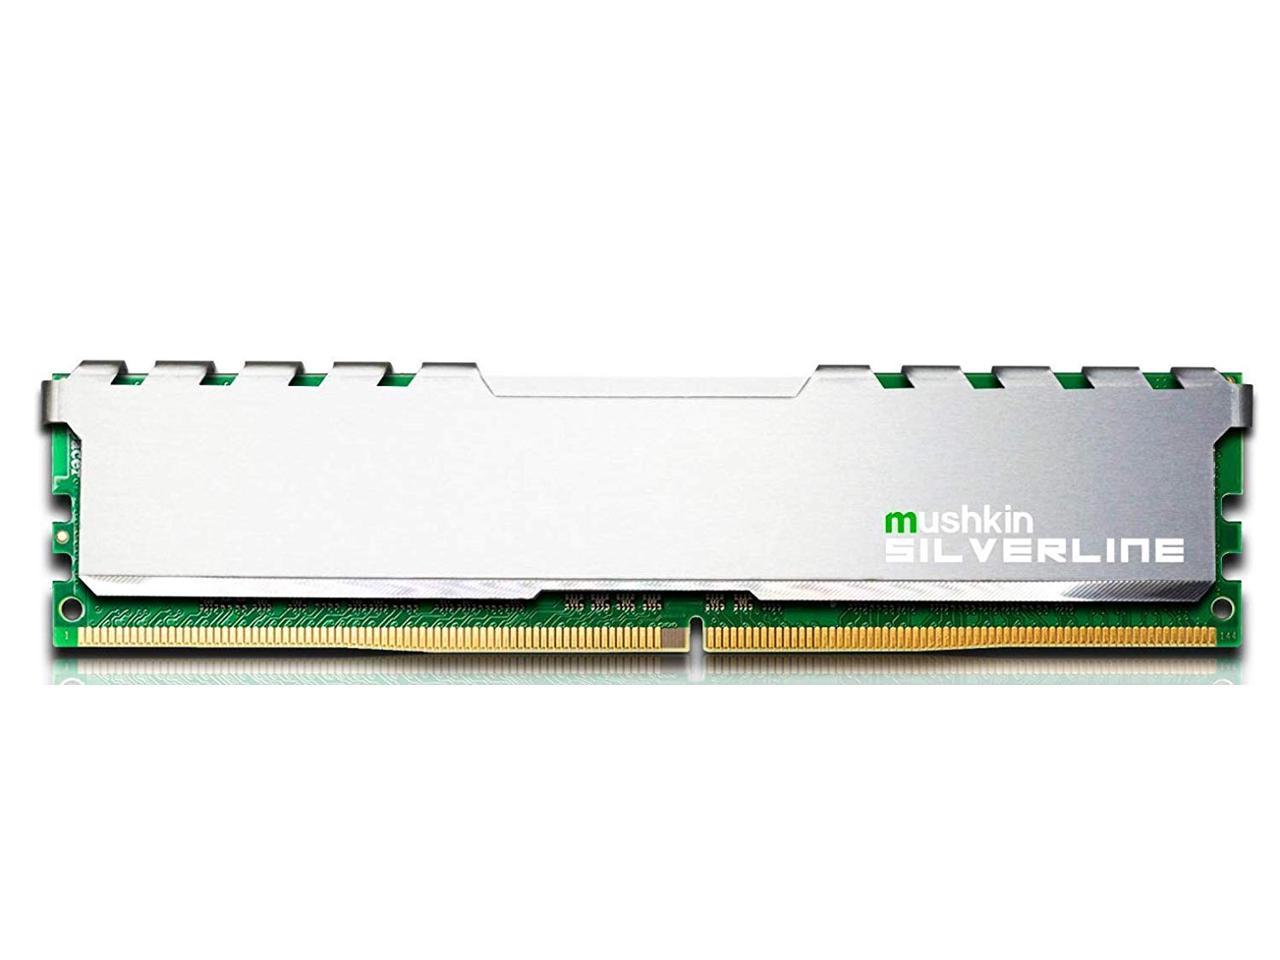 Mushkin 8GB (2X4GB) DDR4 UDIMM 2666MHz PC4-21300 Desktop Memory Model MSL4U266KF4GX2